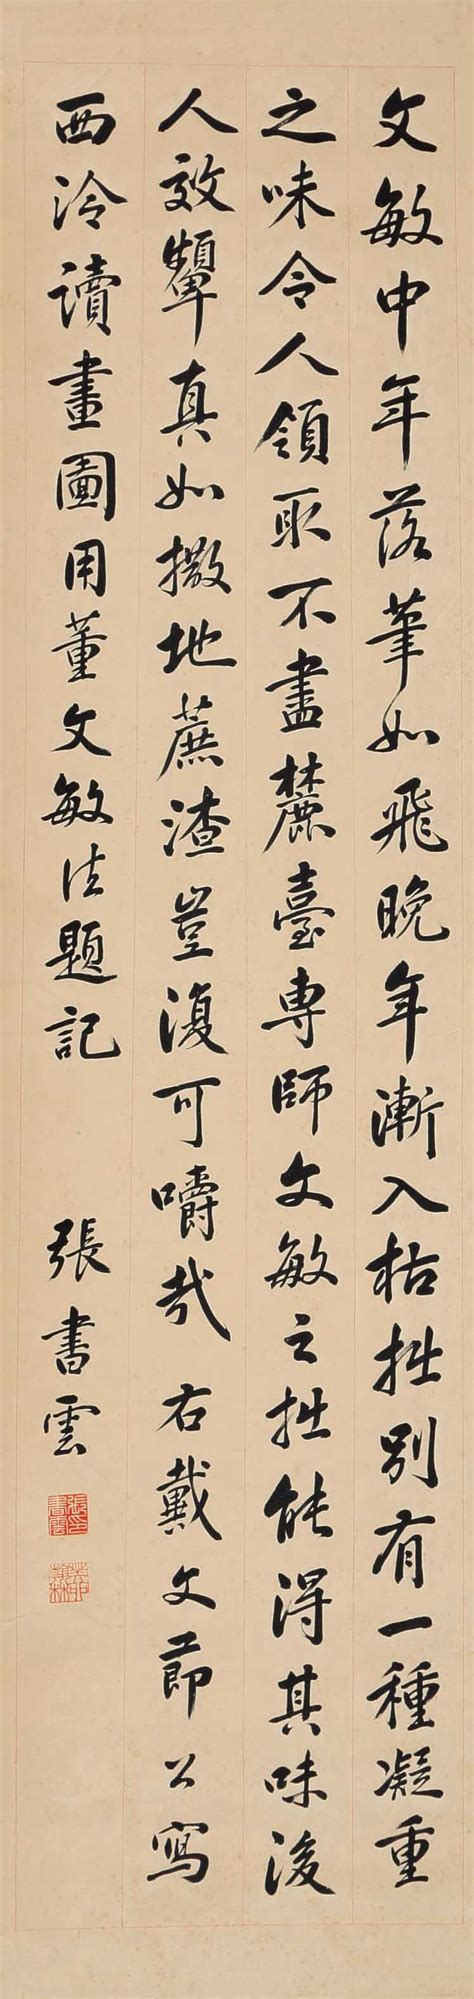 吴茀之、张书旂诞辰120周年，杭州展出花鸟画家的纵横求索 | 中国书法展赛网